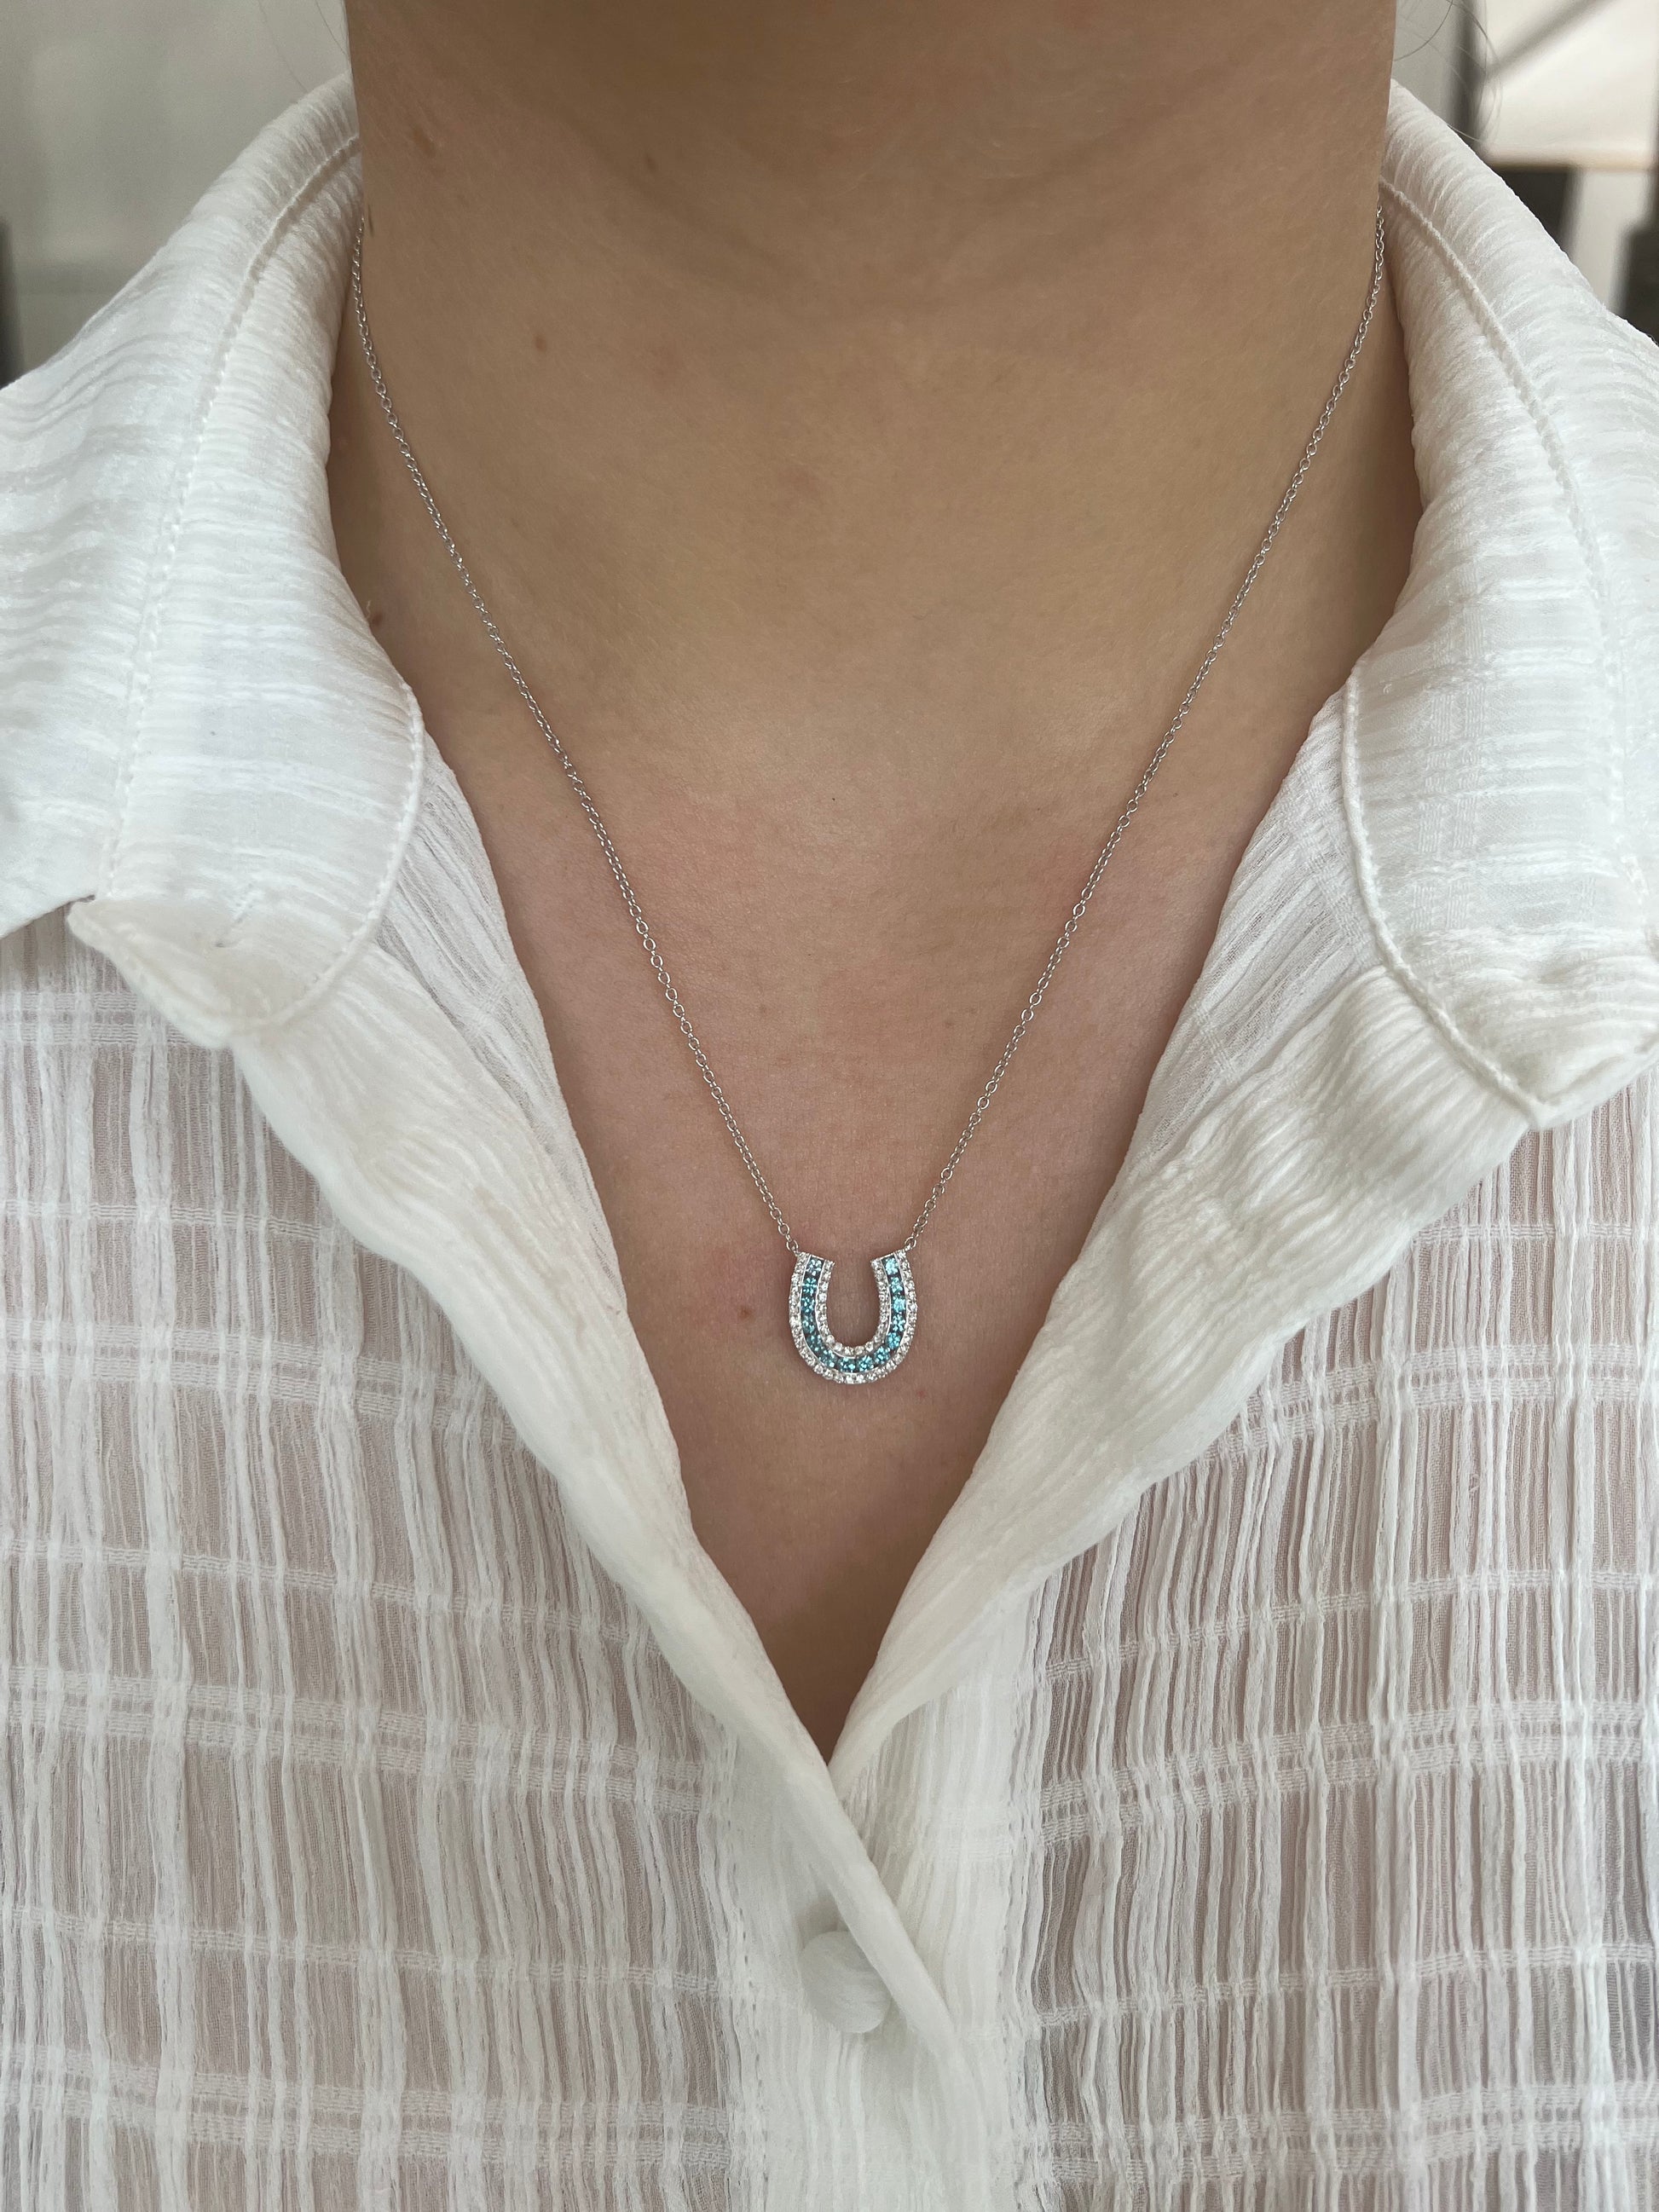 Tiffany & Co. Diamond Horseshoe Necklace in 18K White Gold (0.06 CTW) –  myGemma| Item #099873